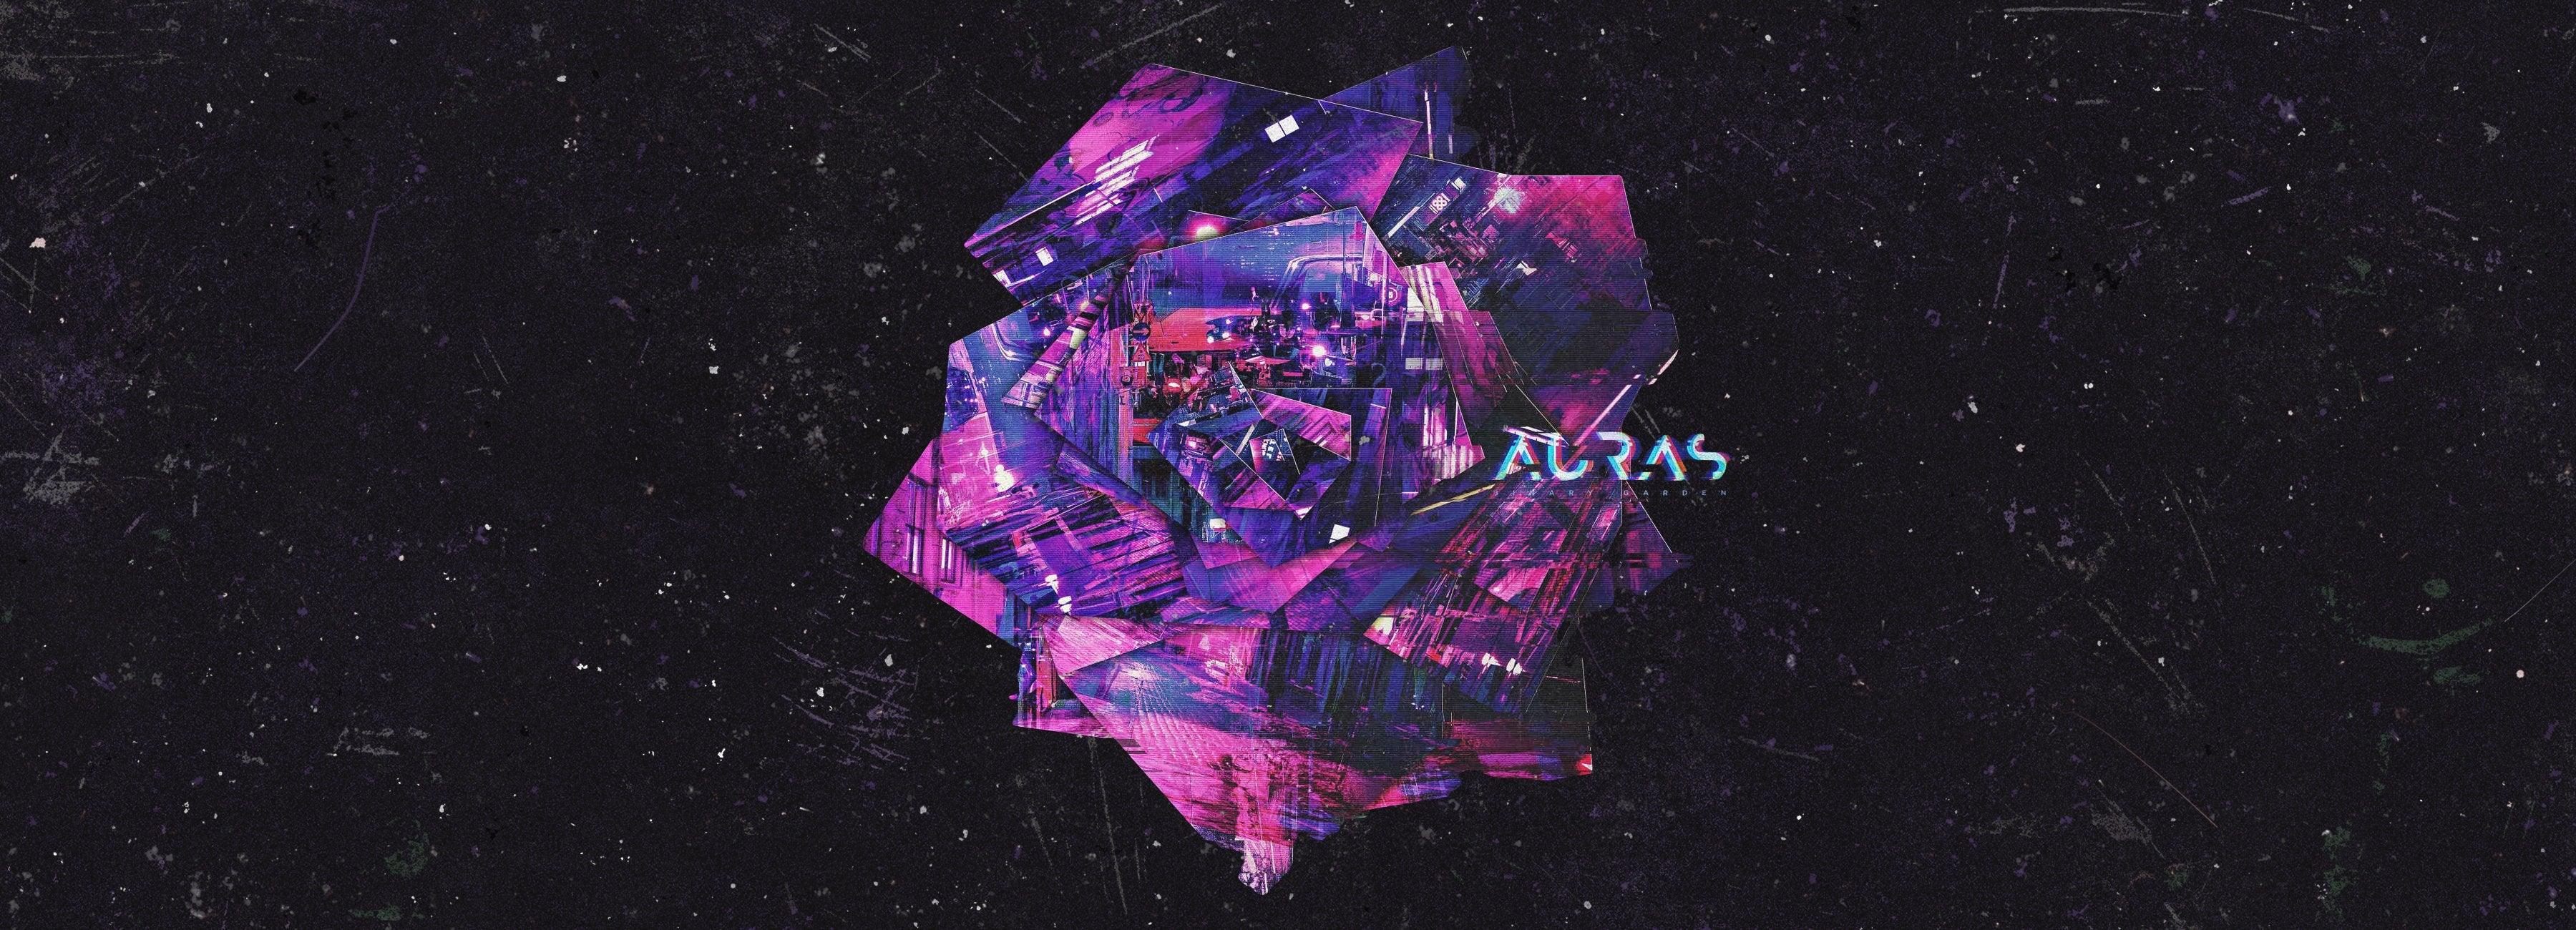 Auras - MNRK Heavy